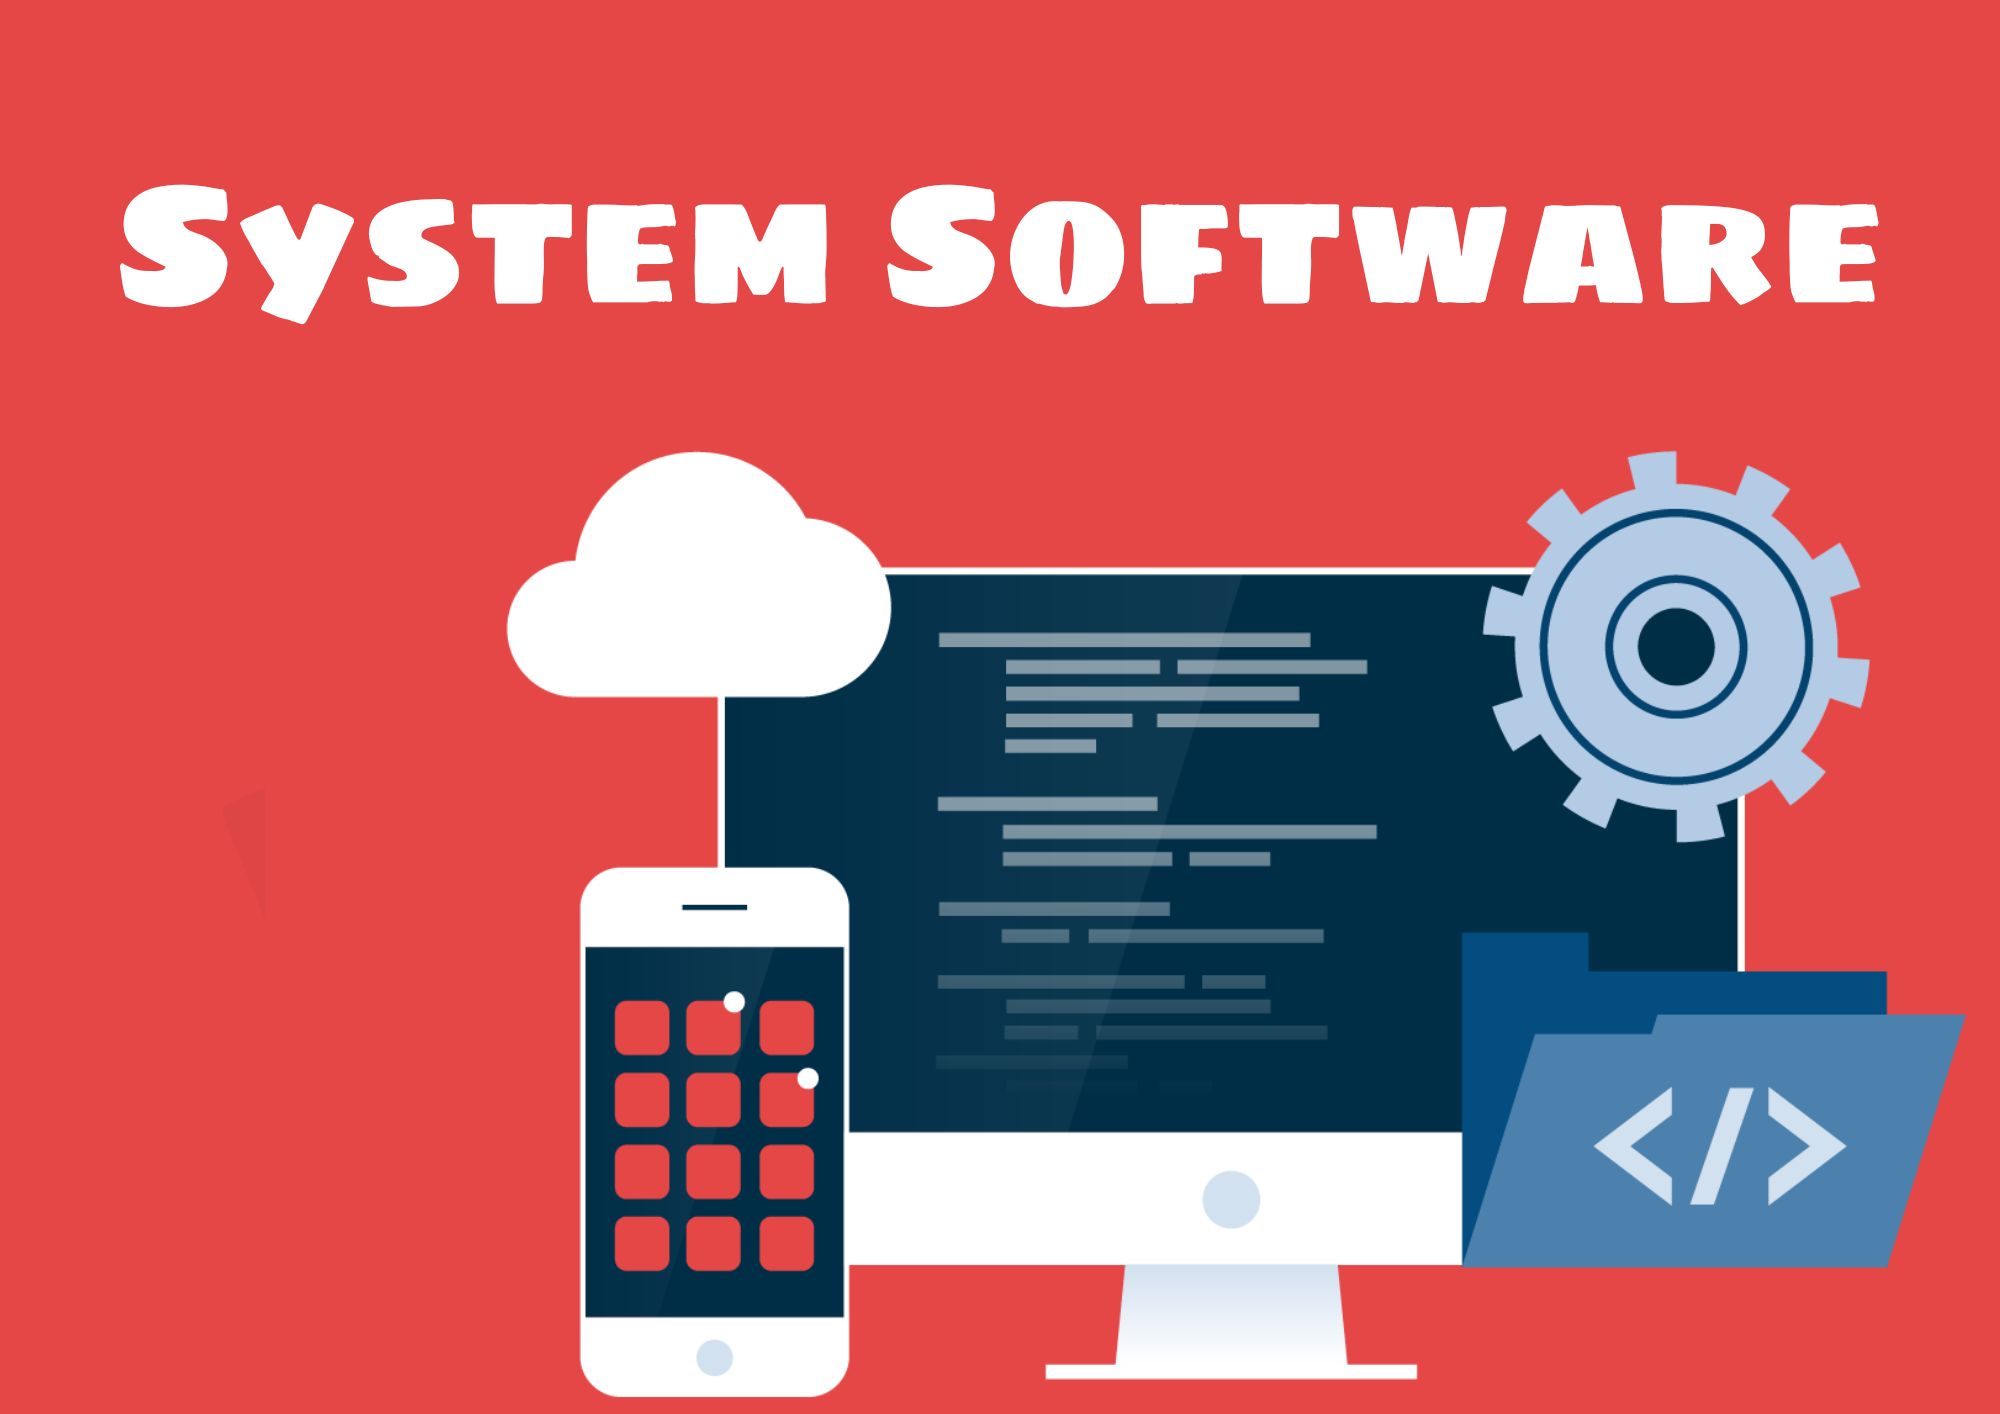 सिस्टम सॉफ्टवेयर क्या है, प्रकार और उदाहरण - What Is System Software In Hindi